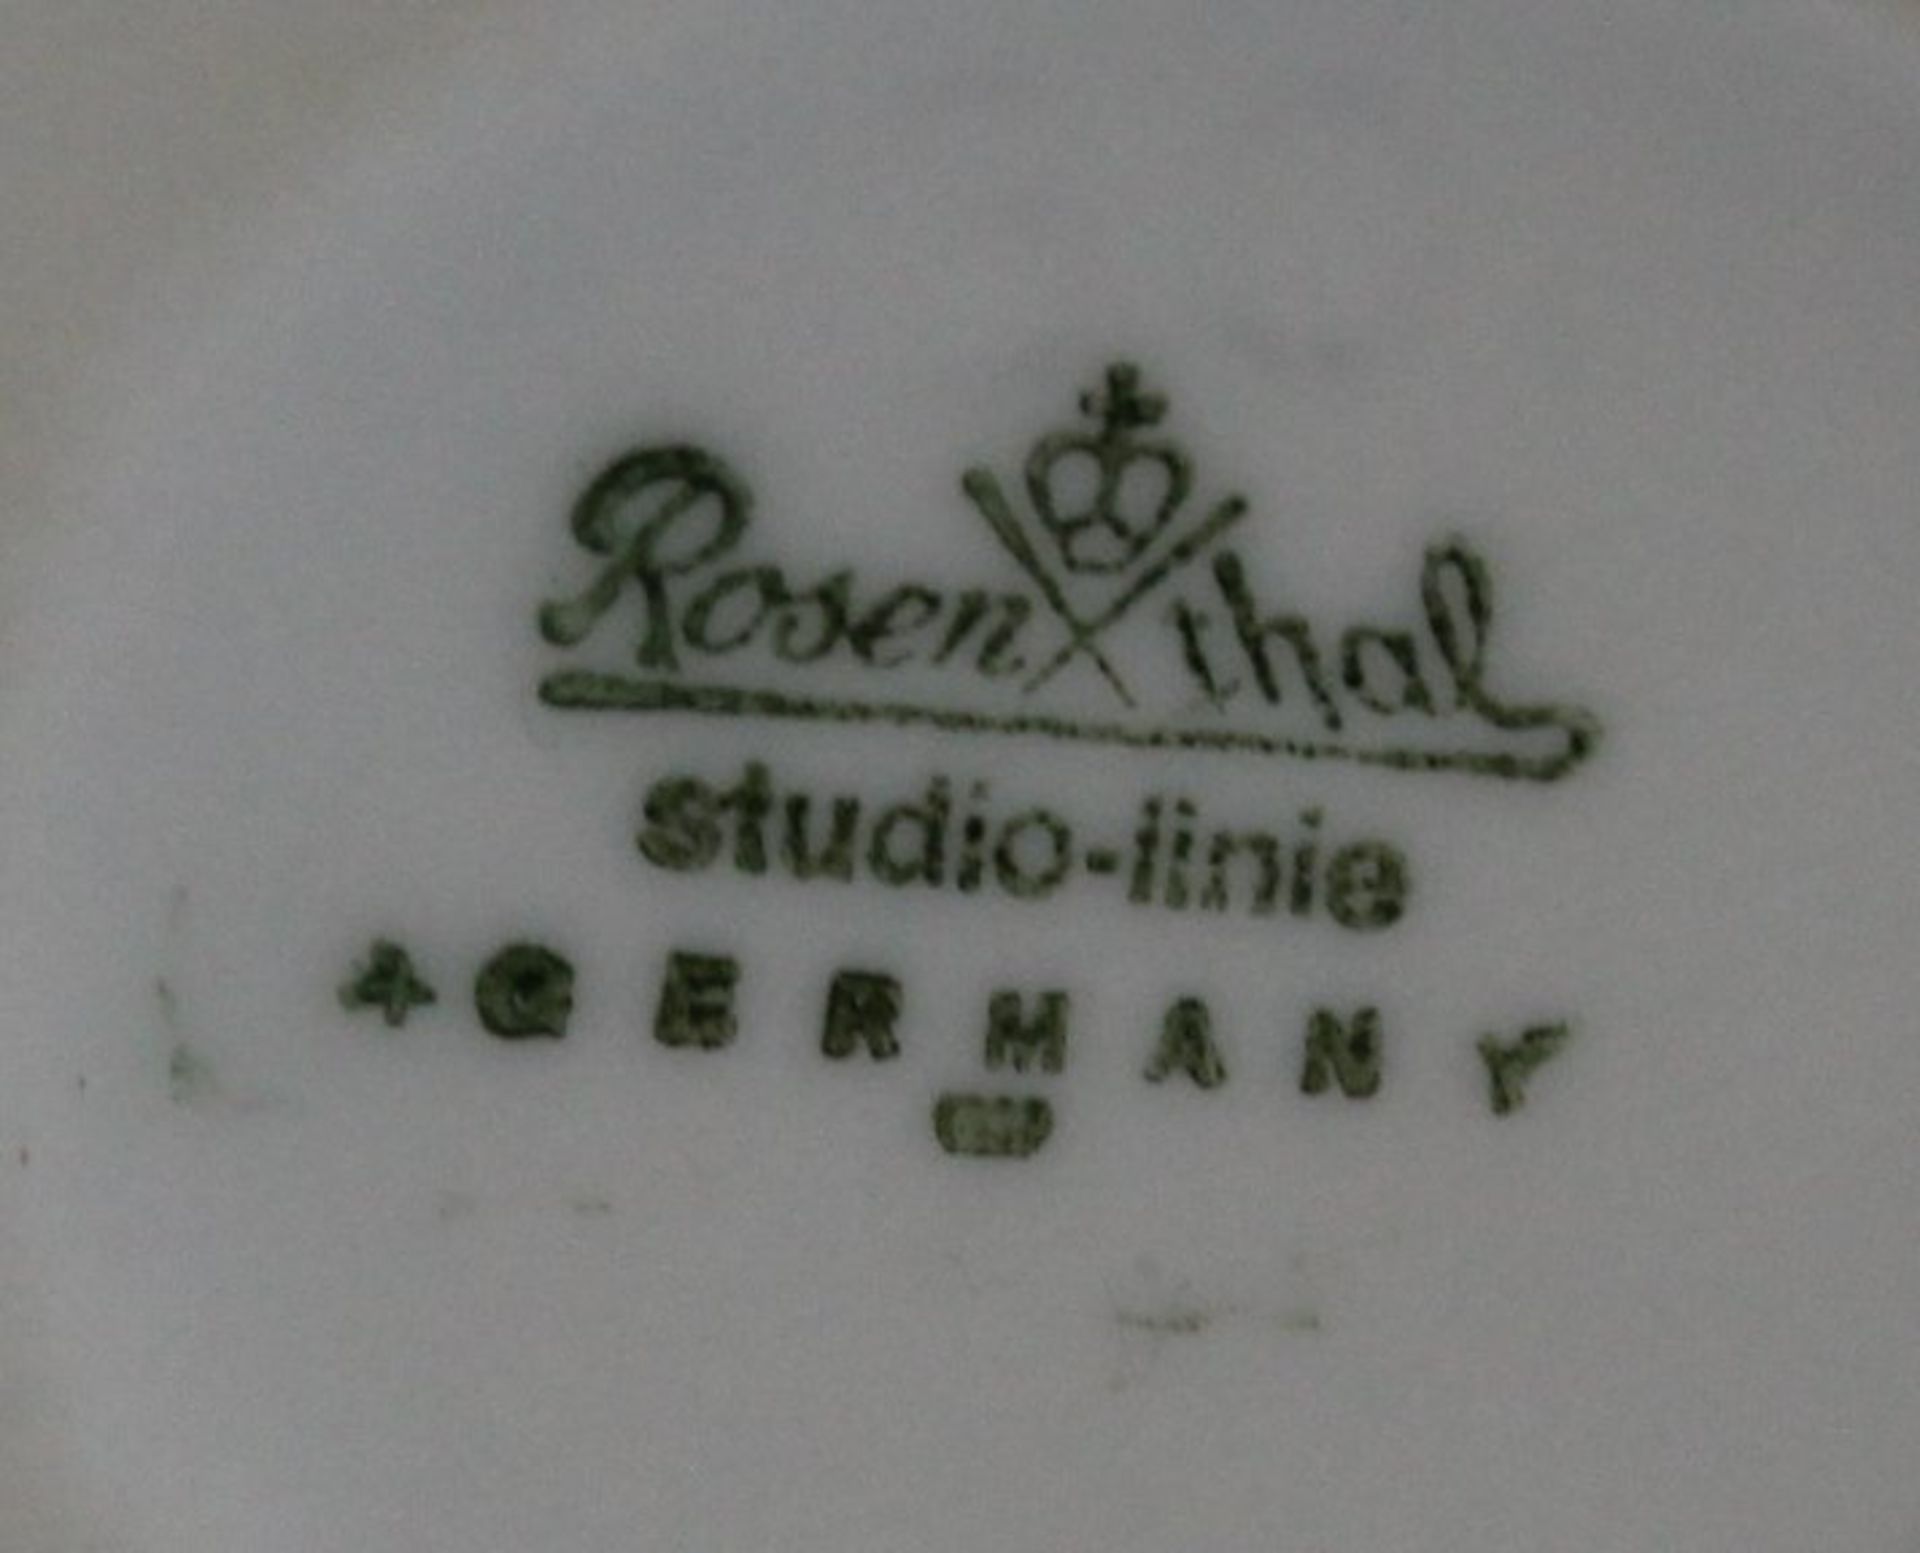 Tischfeuerzeug und Ascher, Rosenthal studio-linie, Weißporzellan, Feuerzeug defekt, ca. H-9,5cm. - Image 4 of 4